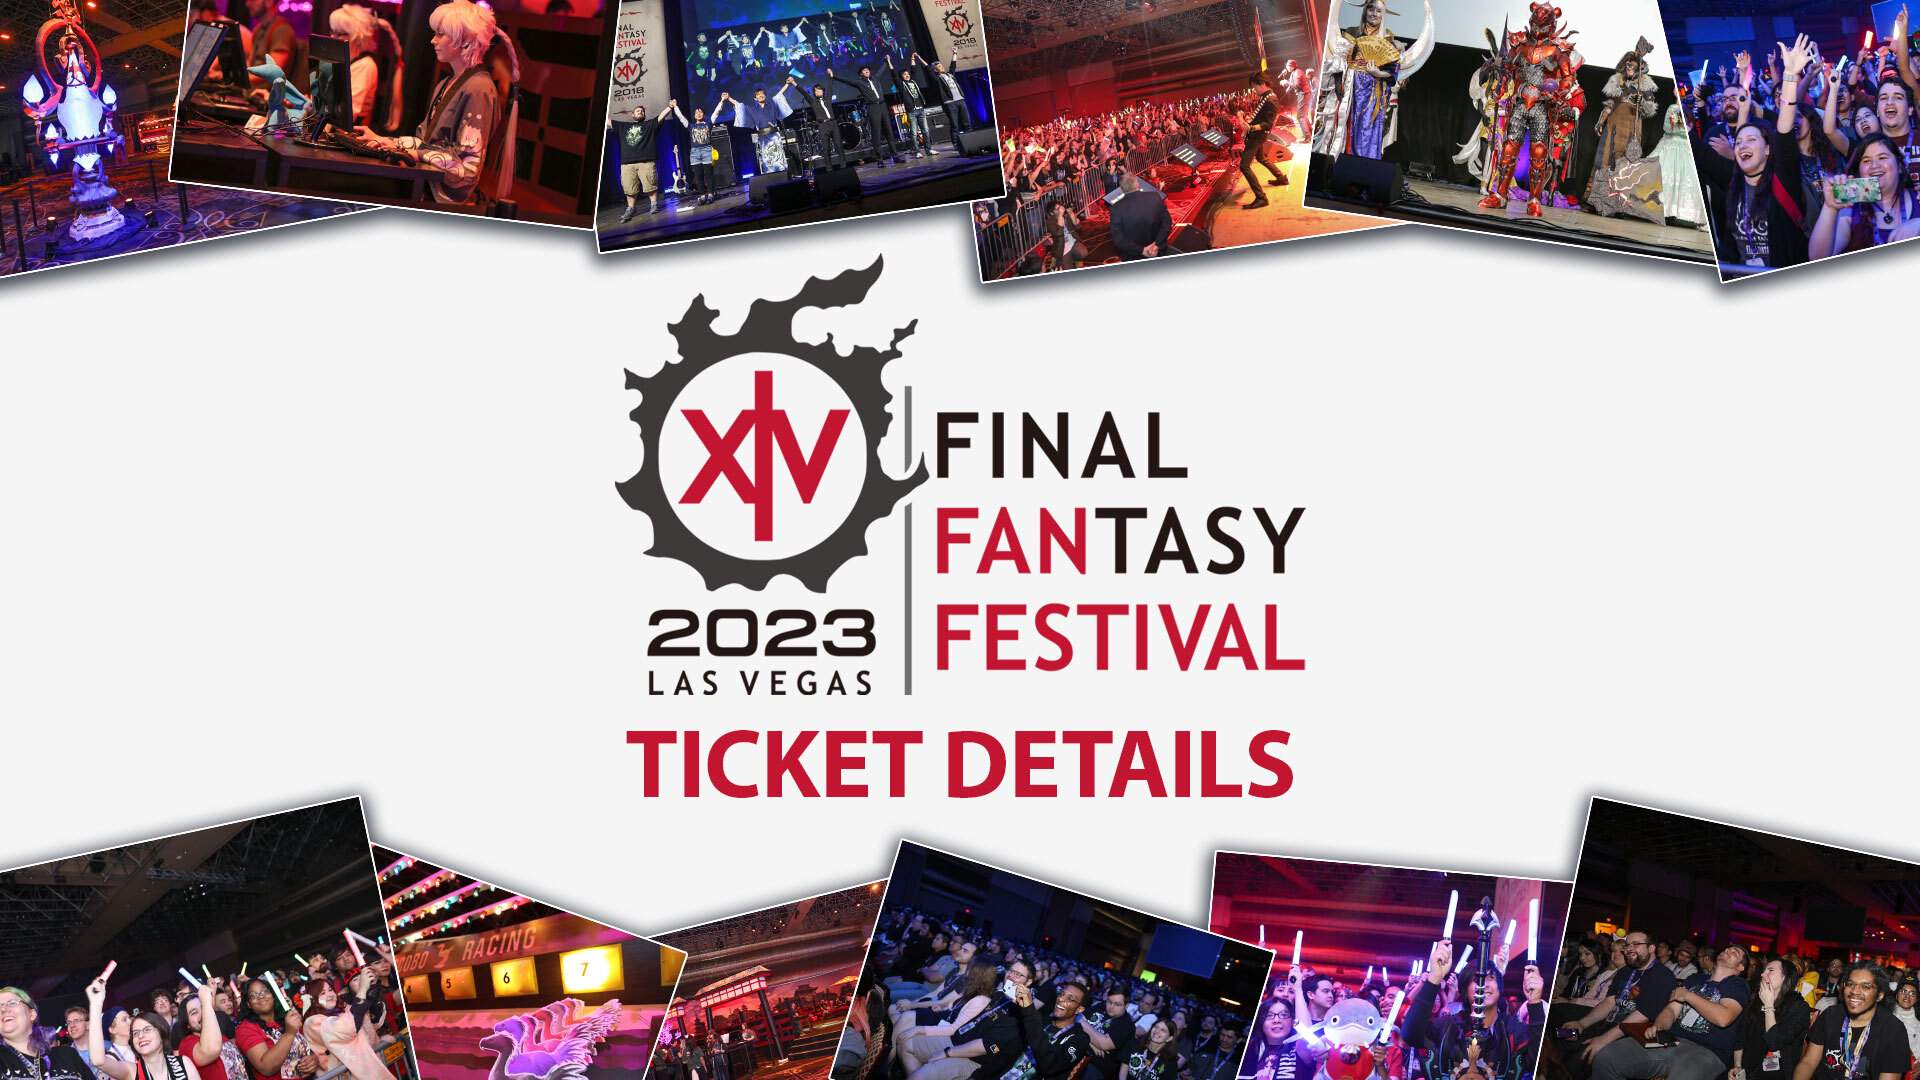 Fan Festival 2023 in Las Vegas logo with 